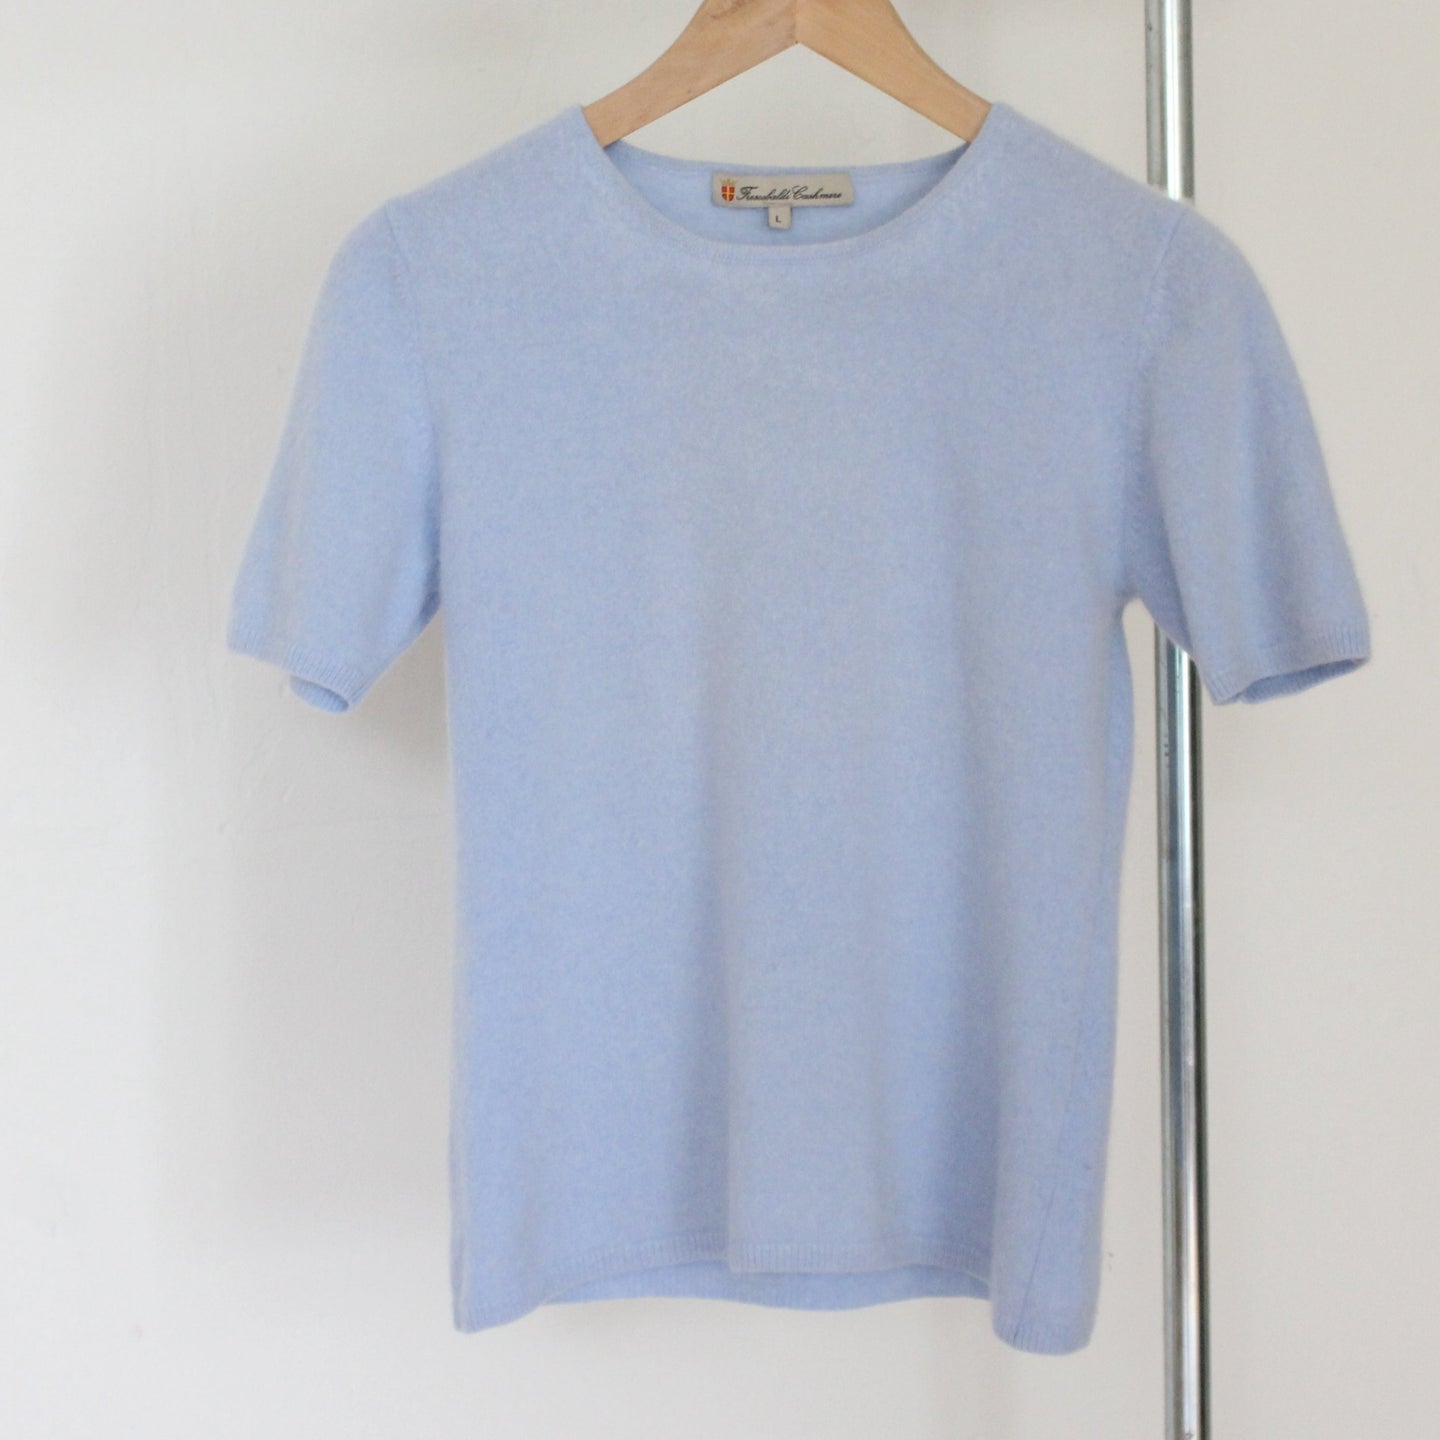 Vintage soft blue cashmere top, size S-L